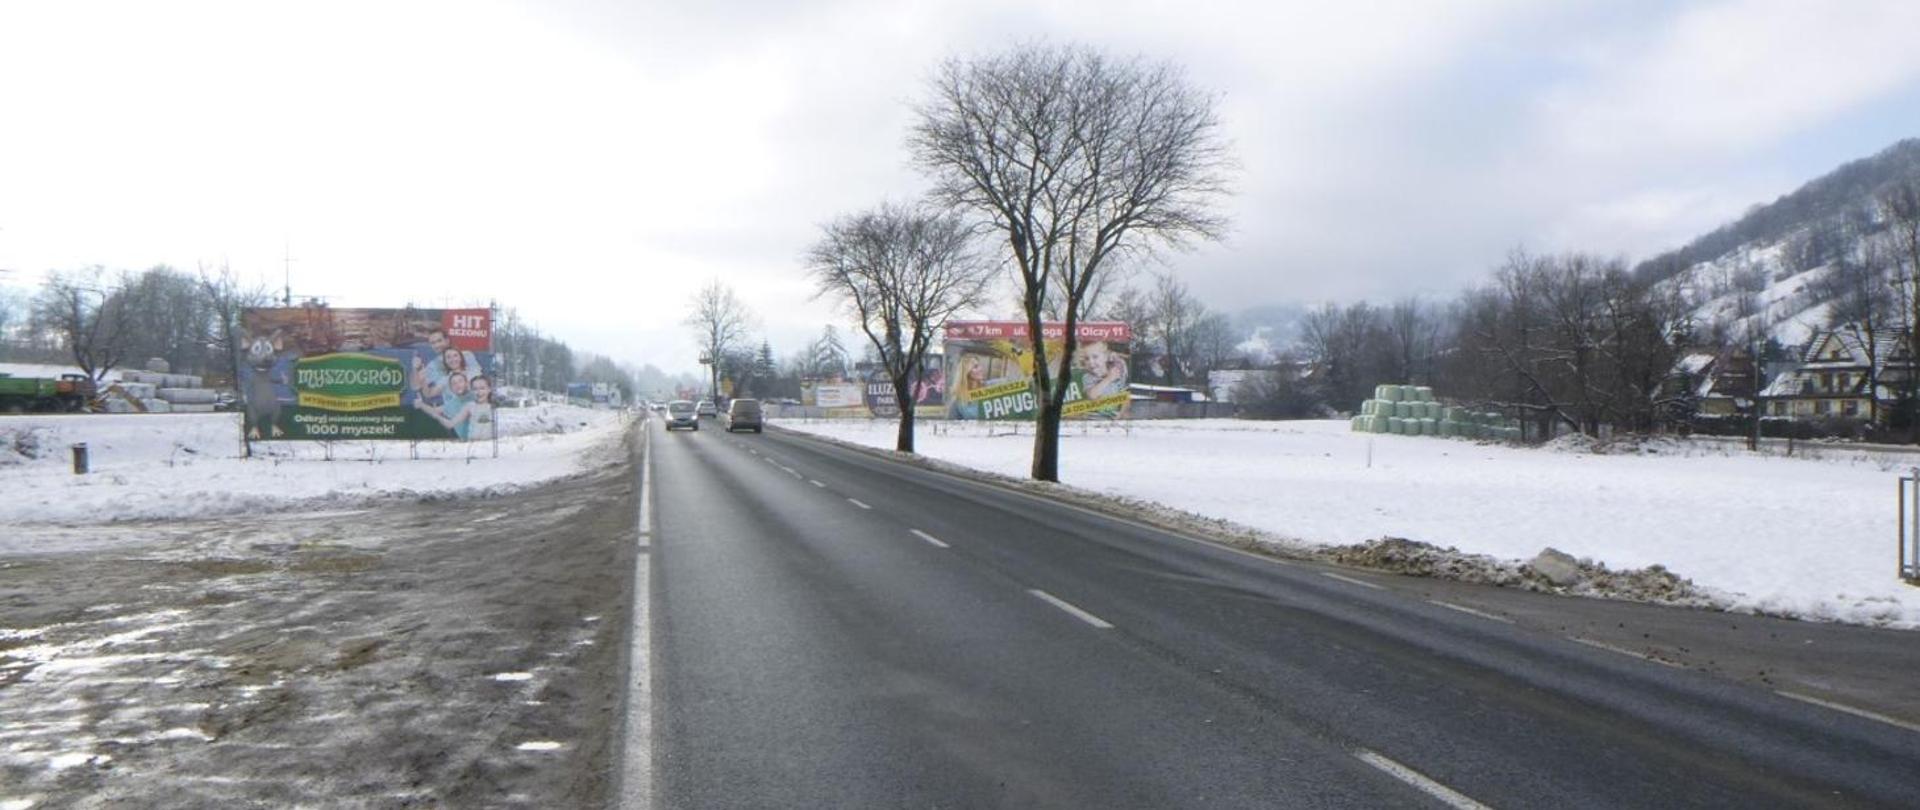 Zima. Zdjęcie z poziomu ziemi. Widoczne pojazdy jadące jednojezdniową drogą. Na poboczach śnieg i bilbordy reklamowe.